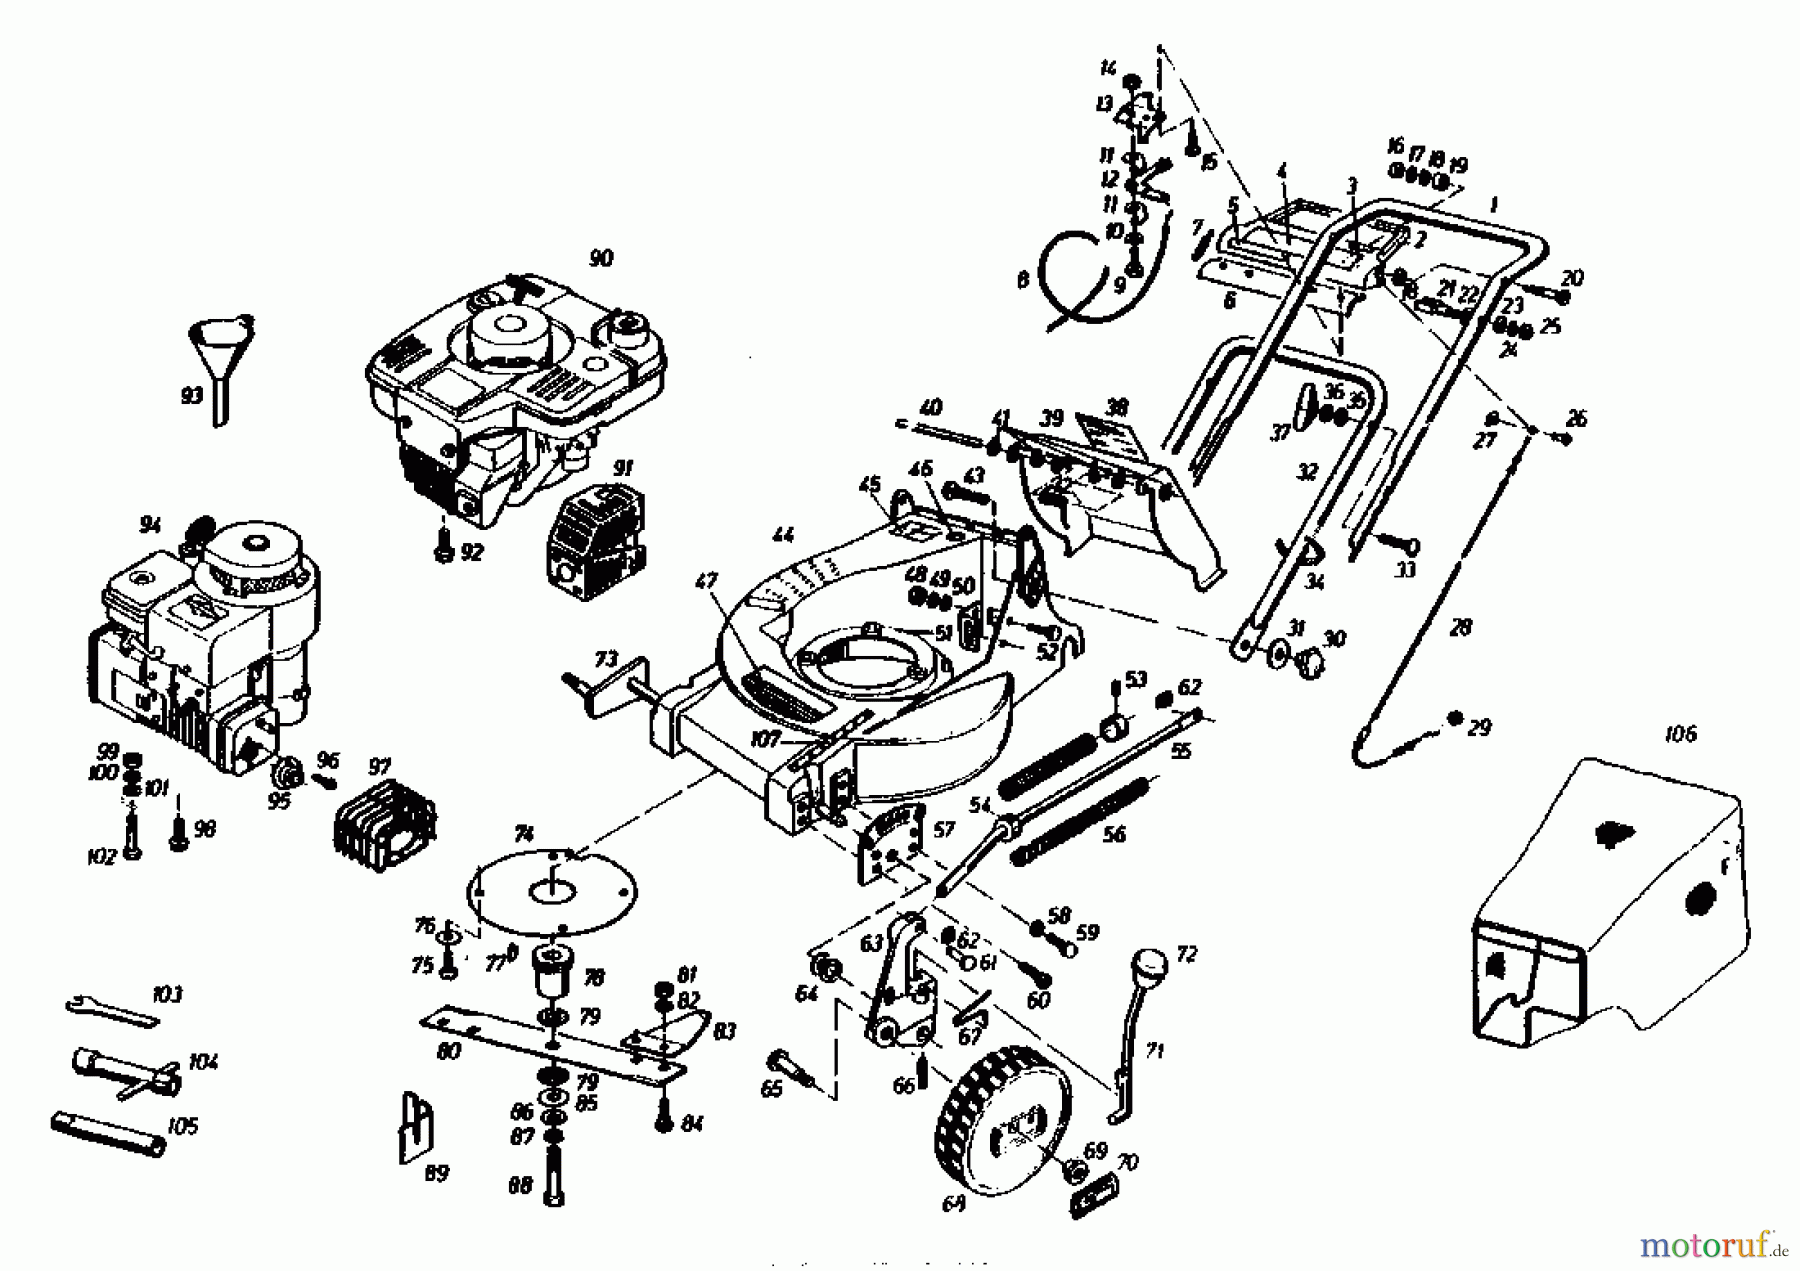  Gutbrod Motormäher mit Antrieb HB 55 R 02882.01  (1985) Grundgerät